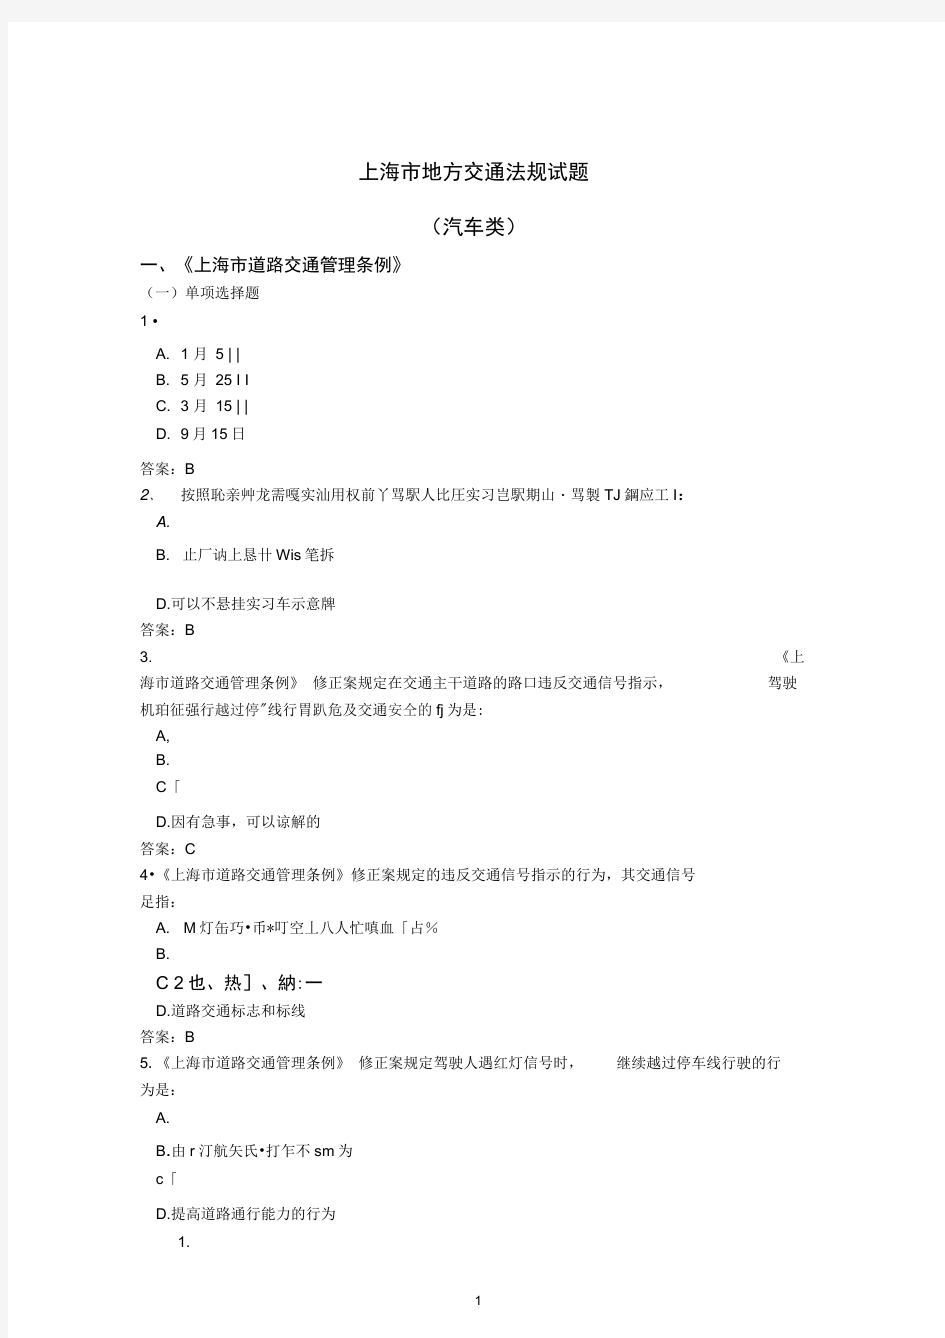 上海地方科目一试题(汽车类)-中文版